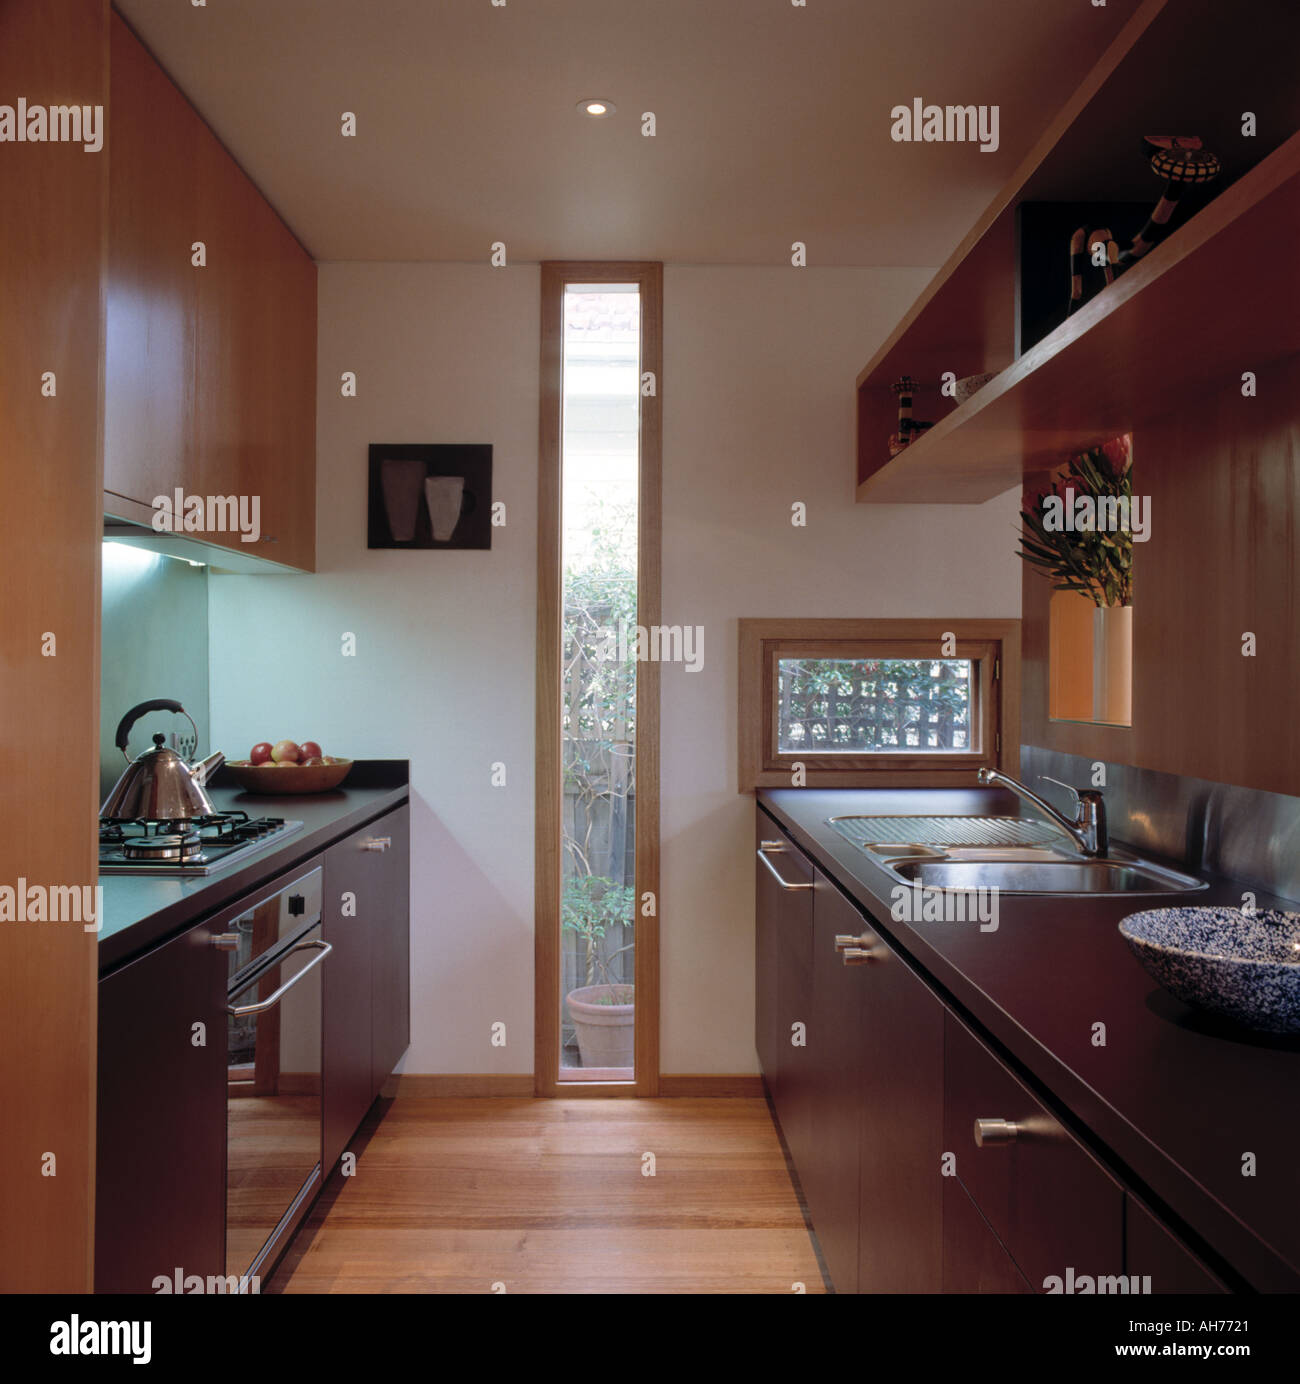 Hohe schmale Fenster in moderne Küche mit Holzboden und schwarzen Geräte  Stockfotografie - Alamy